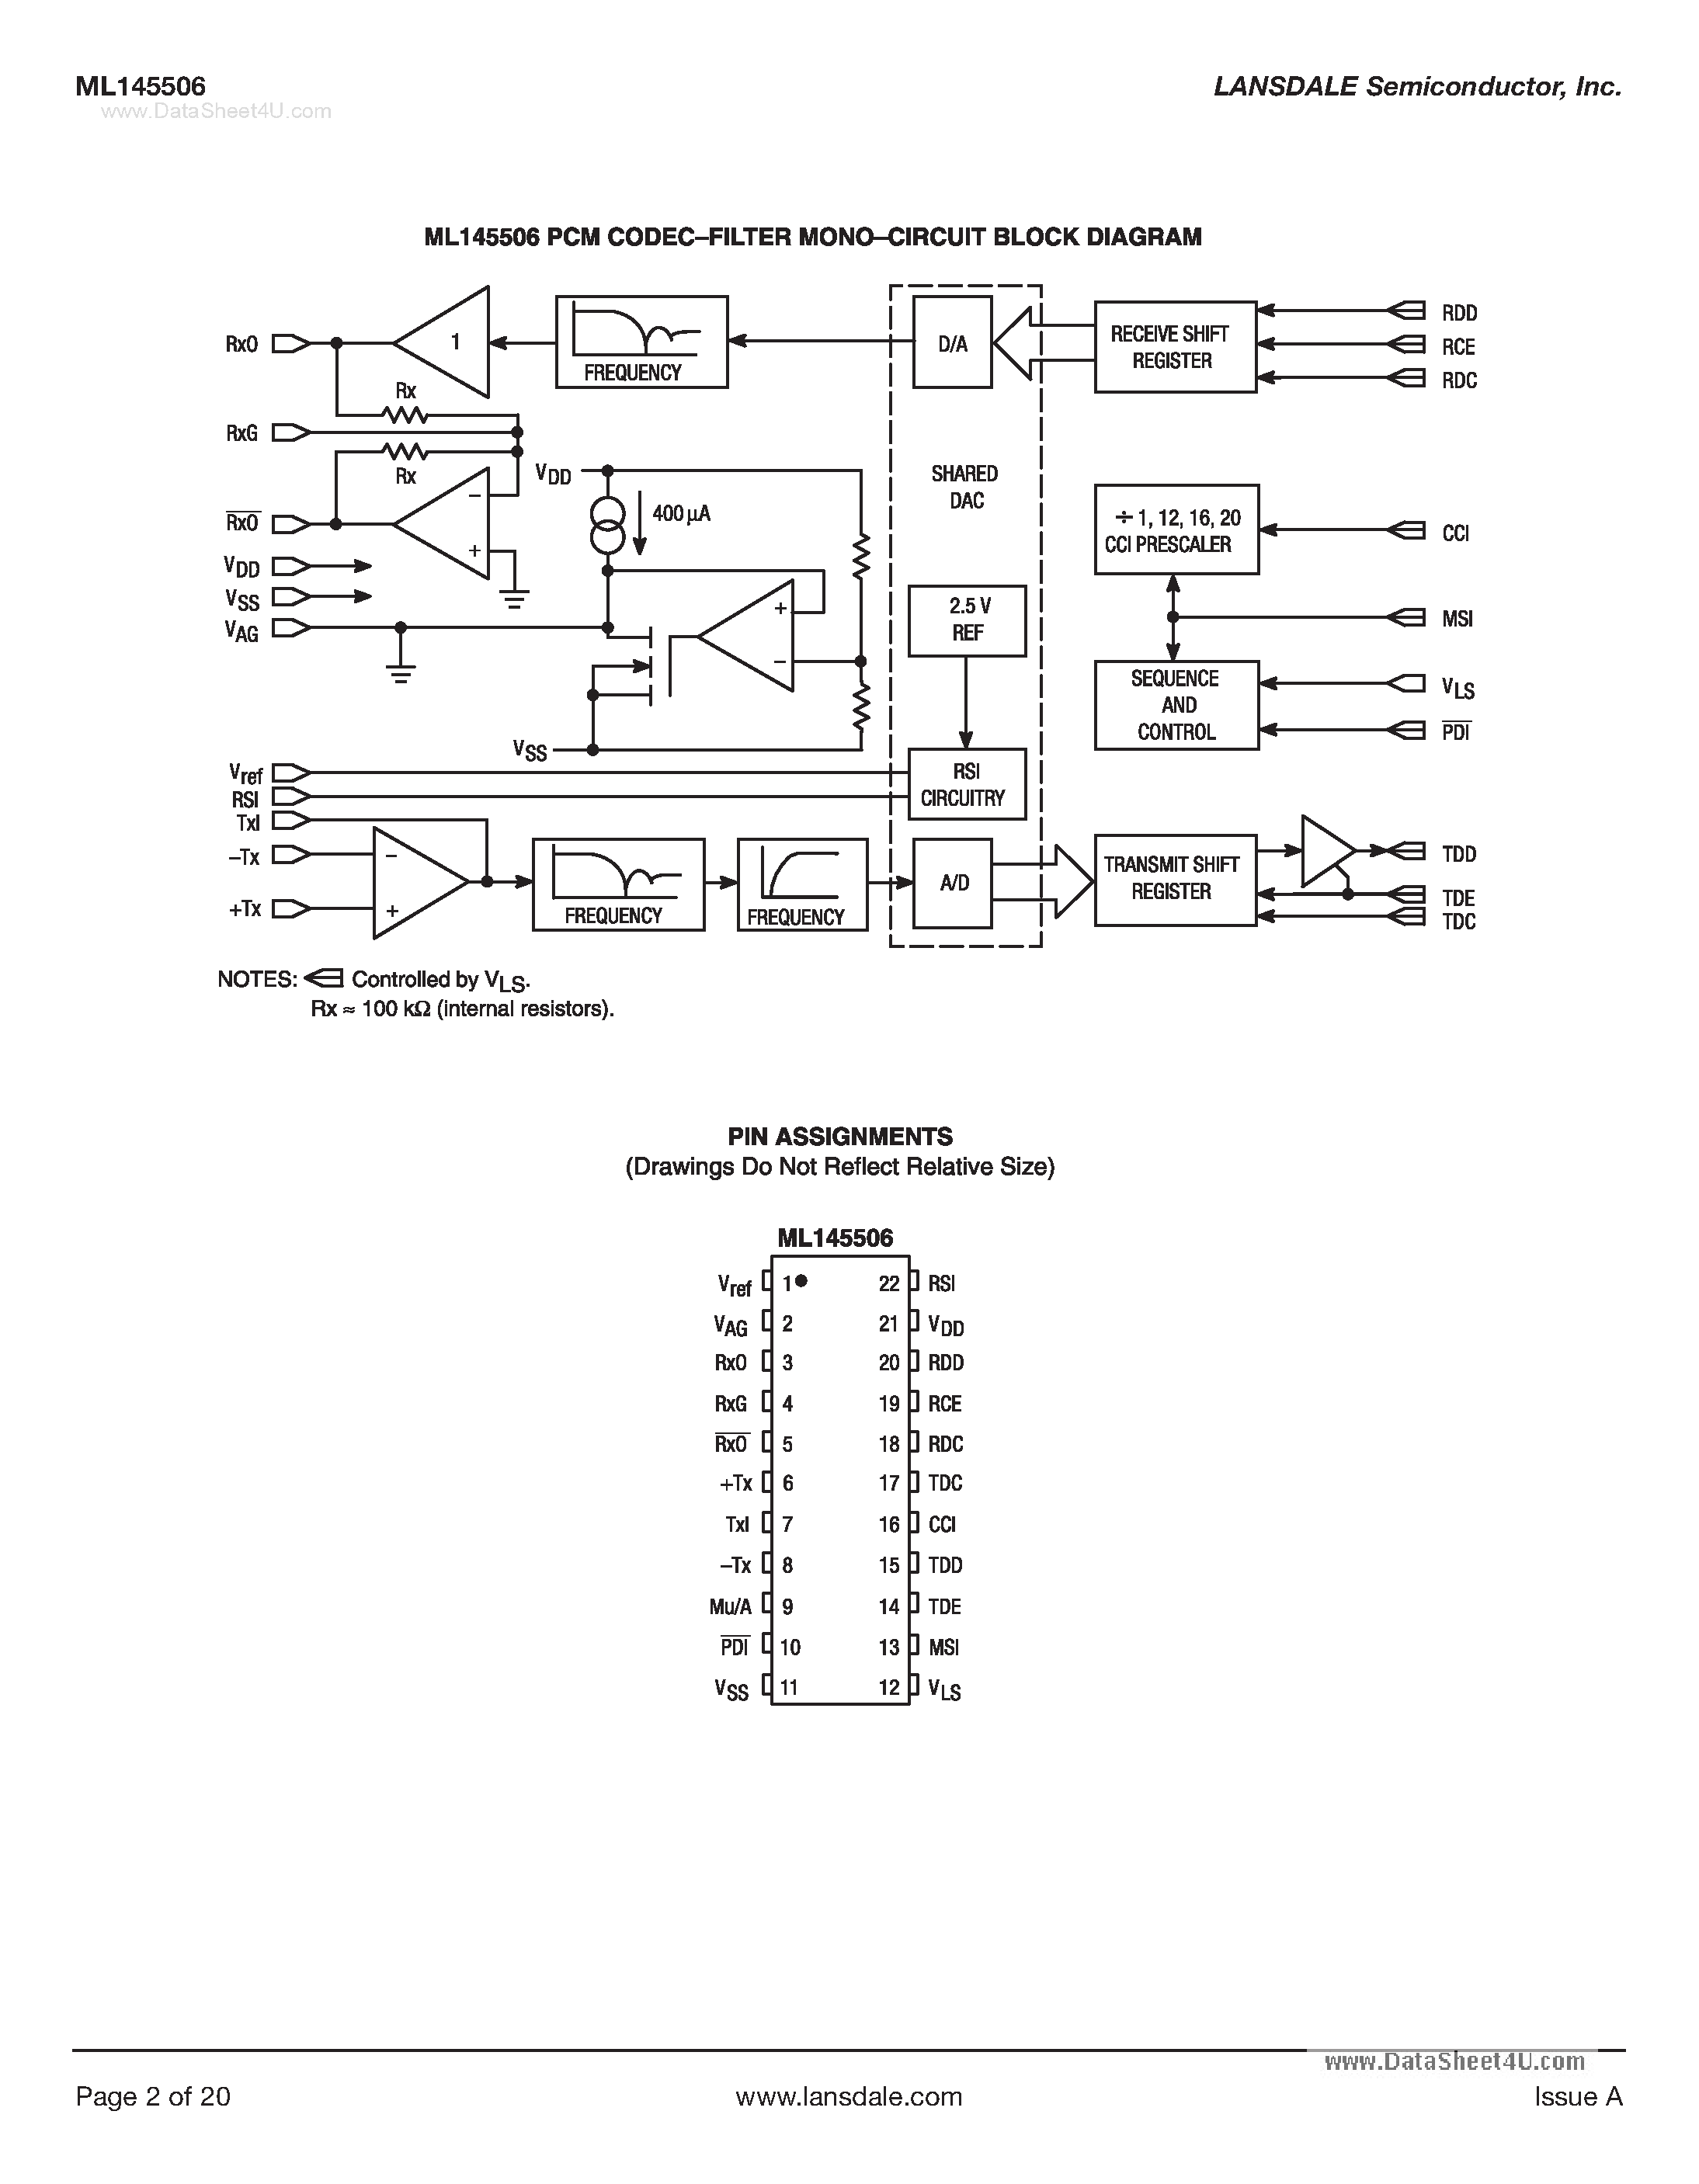 Datasheet ML145506 - PCM Codec-Filter Mono-Circuit page 2